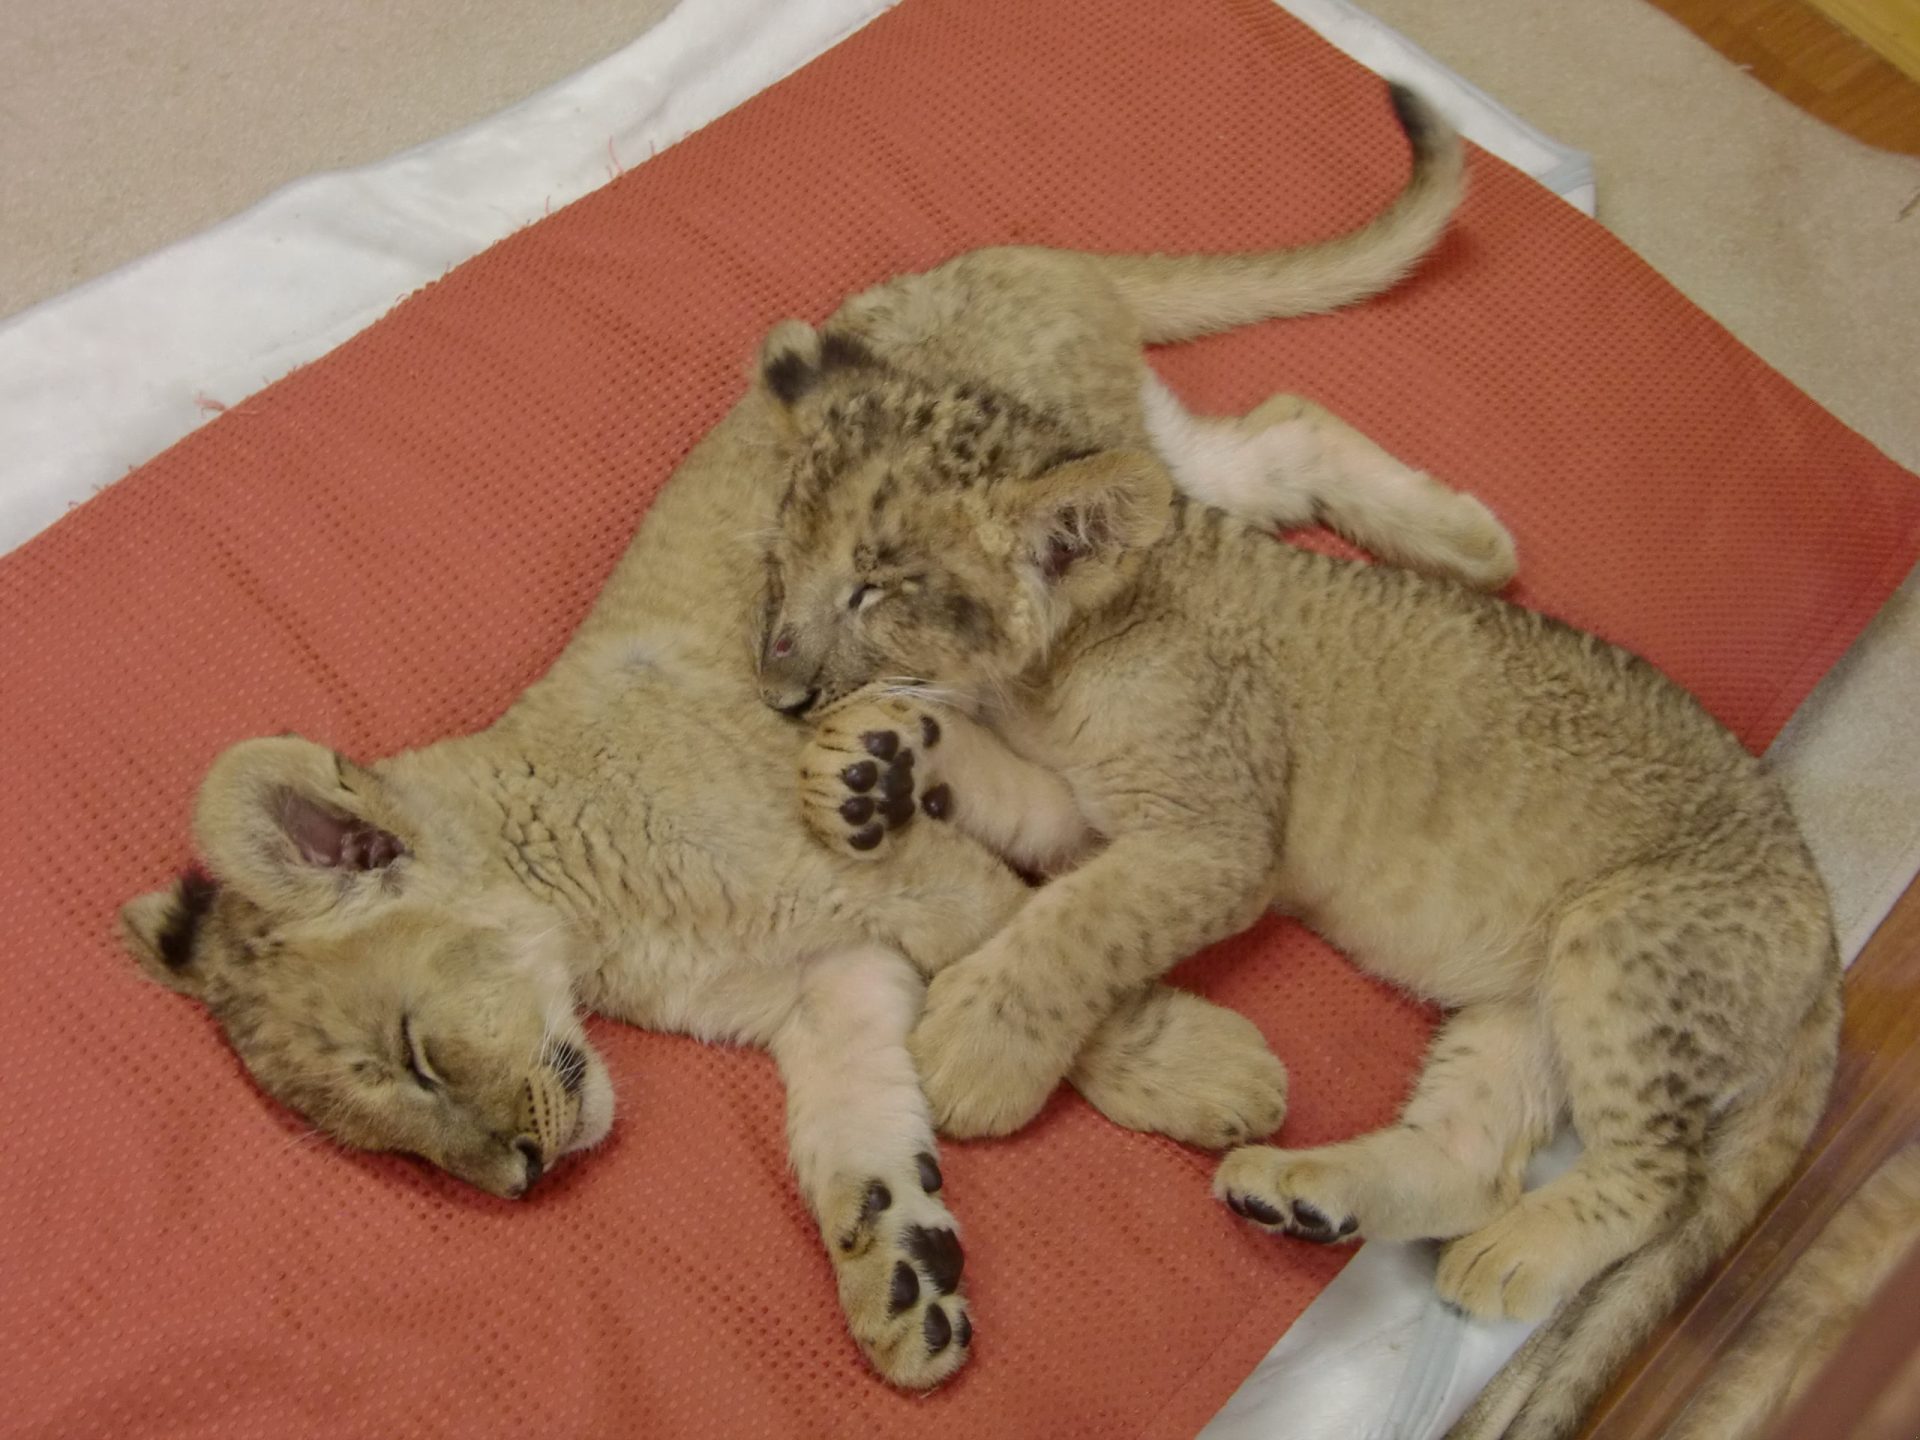 Suécia. Jardim zoológico matou nove crias de leão